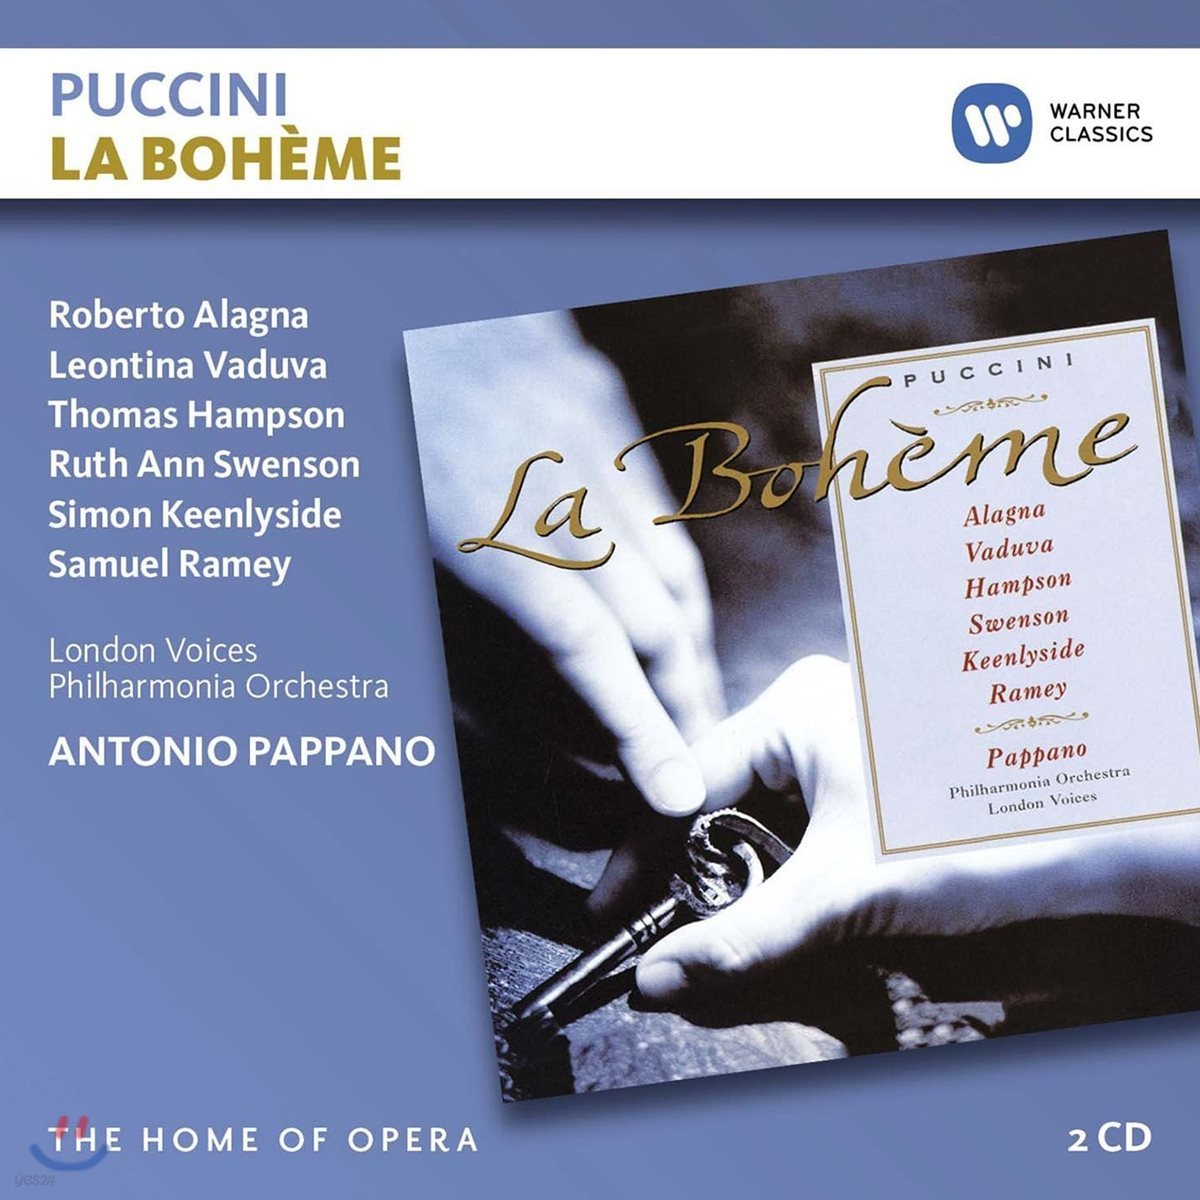 Roberto Alagna / Antonio Pappano 푸치니: 라보엠 (Puccini: La Boheme)